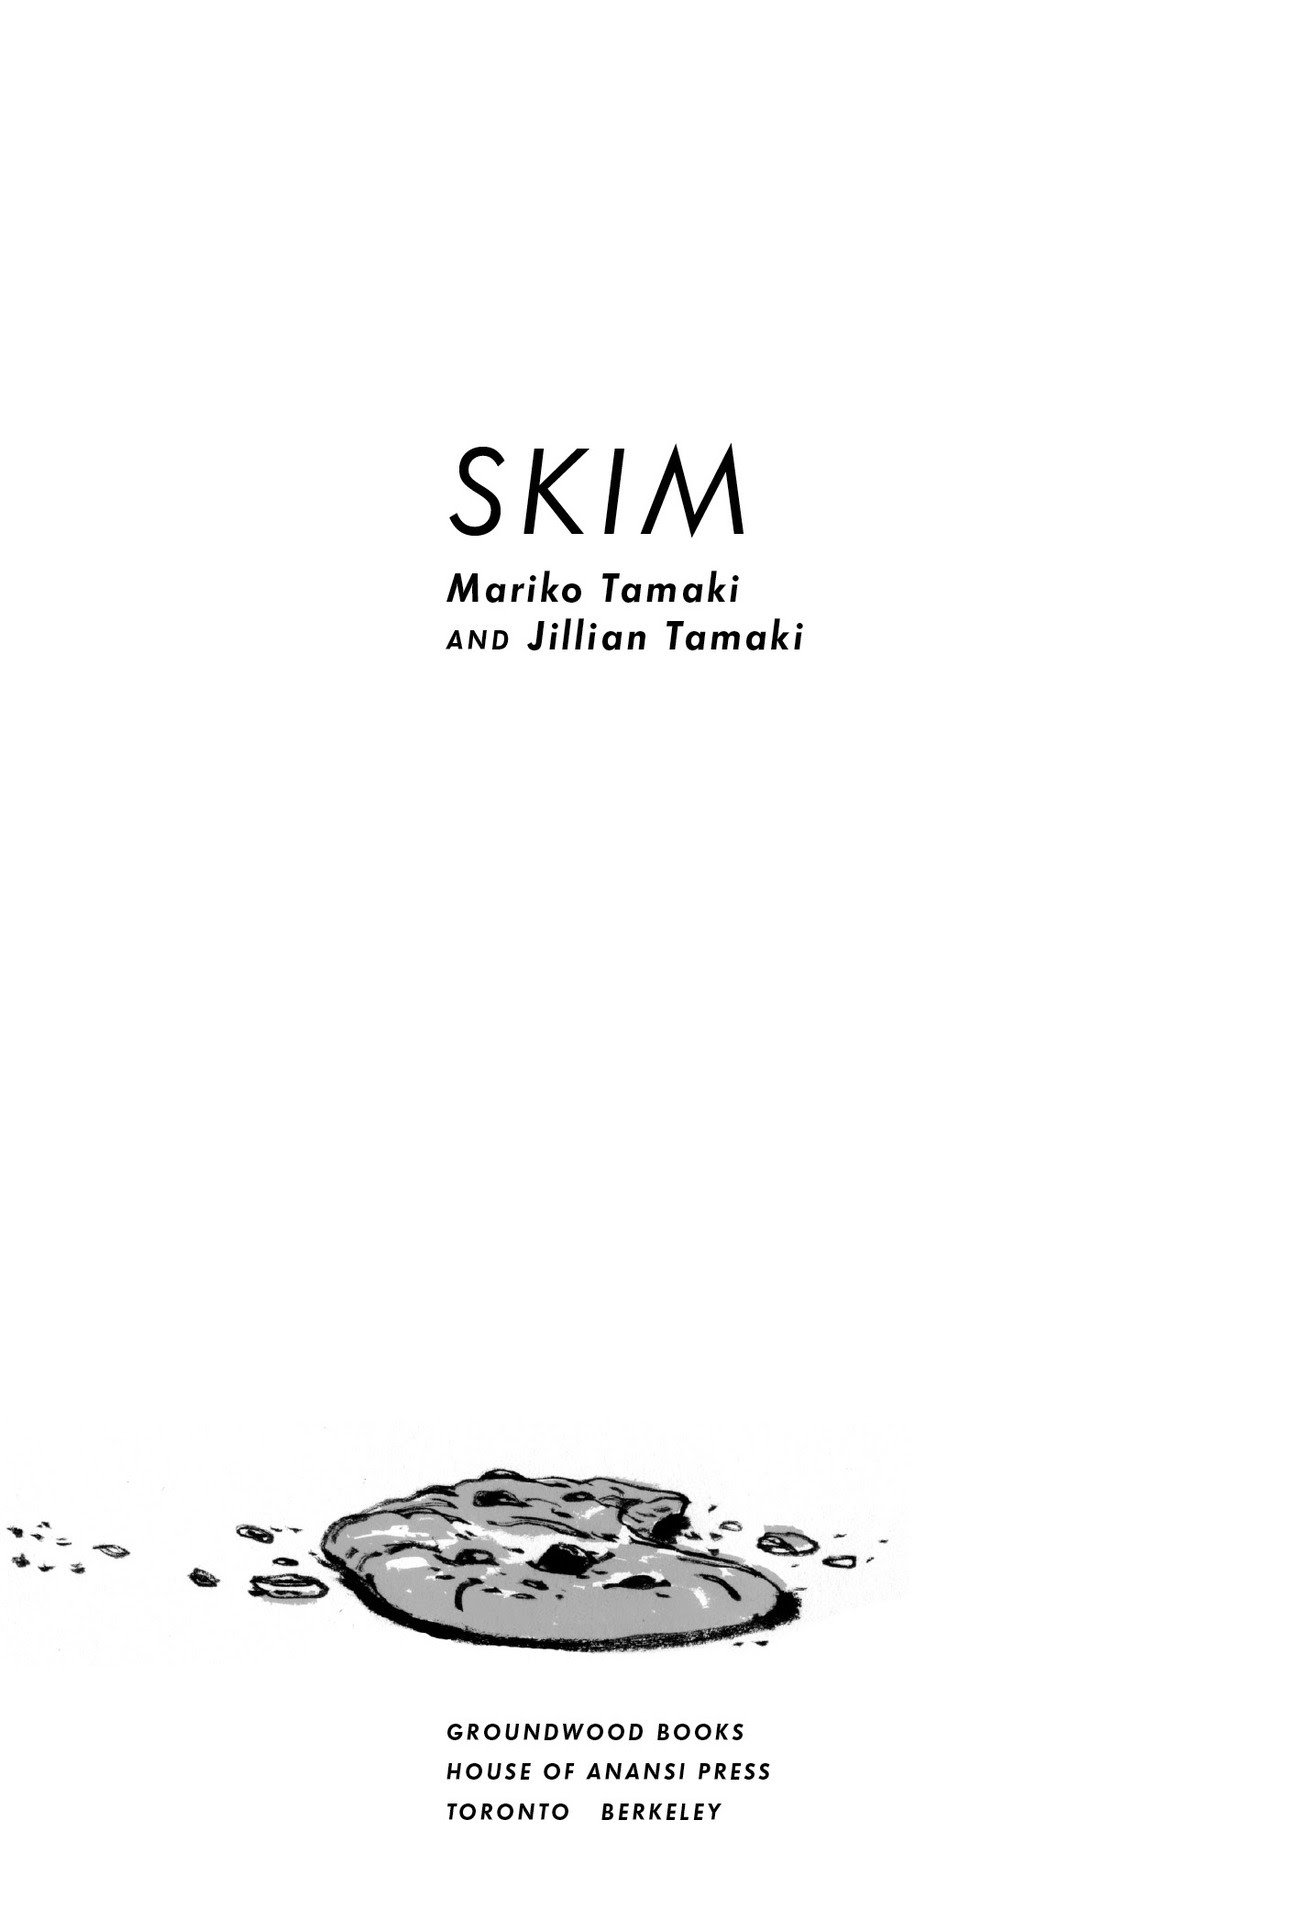 Read online Skim comic -  Issue # TPB - 4